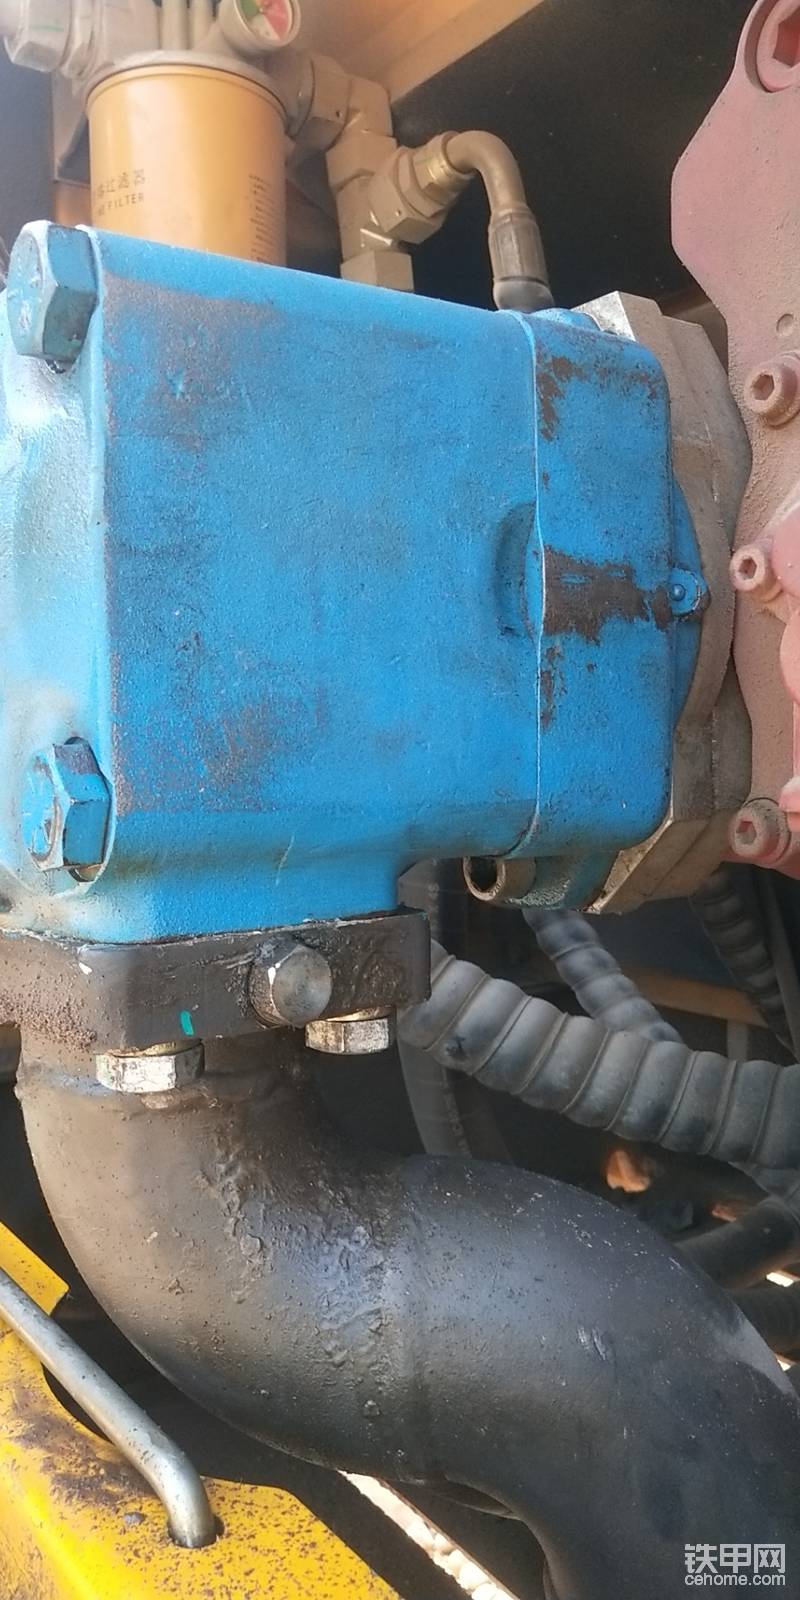 服务人员更换了蓝色油泵后的图片。